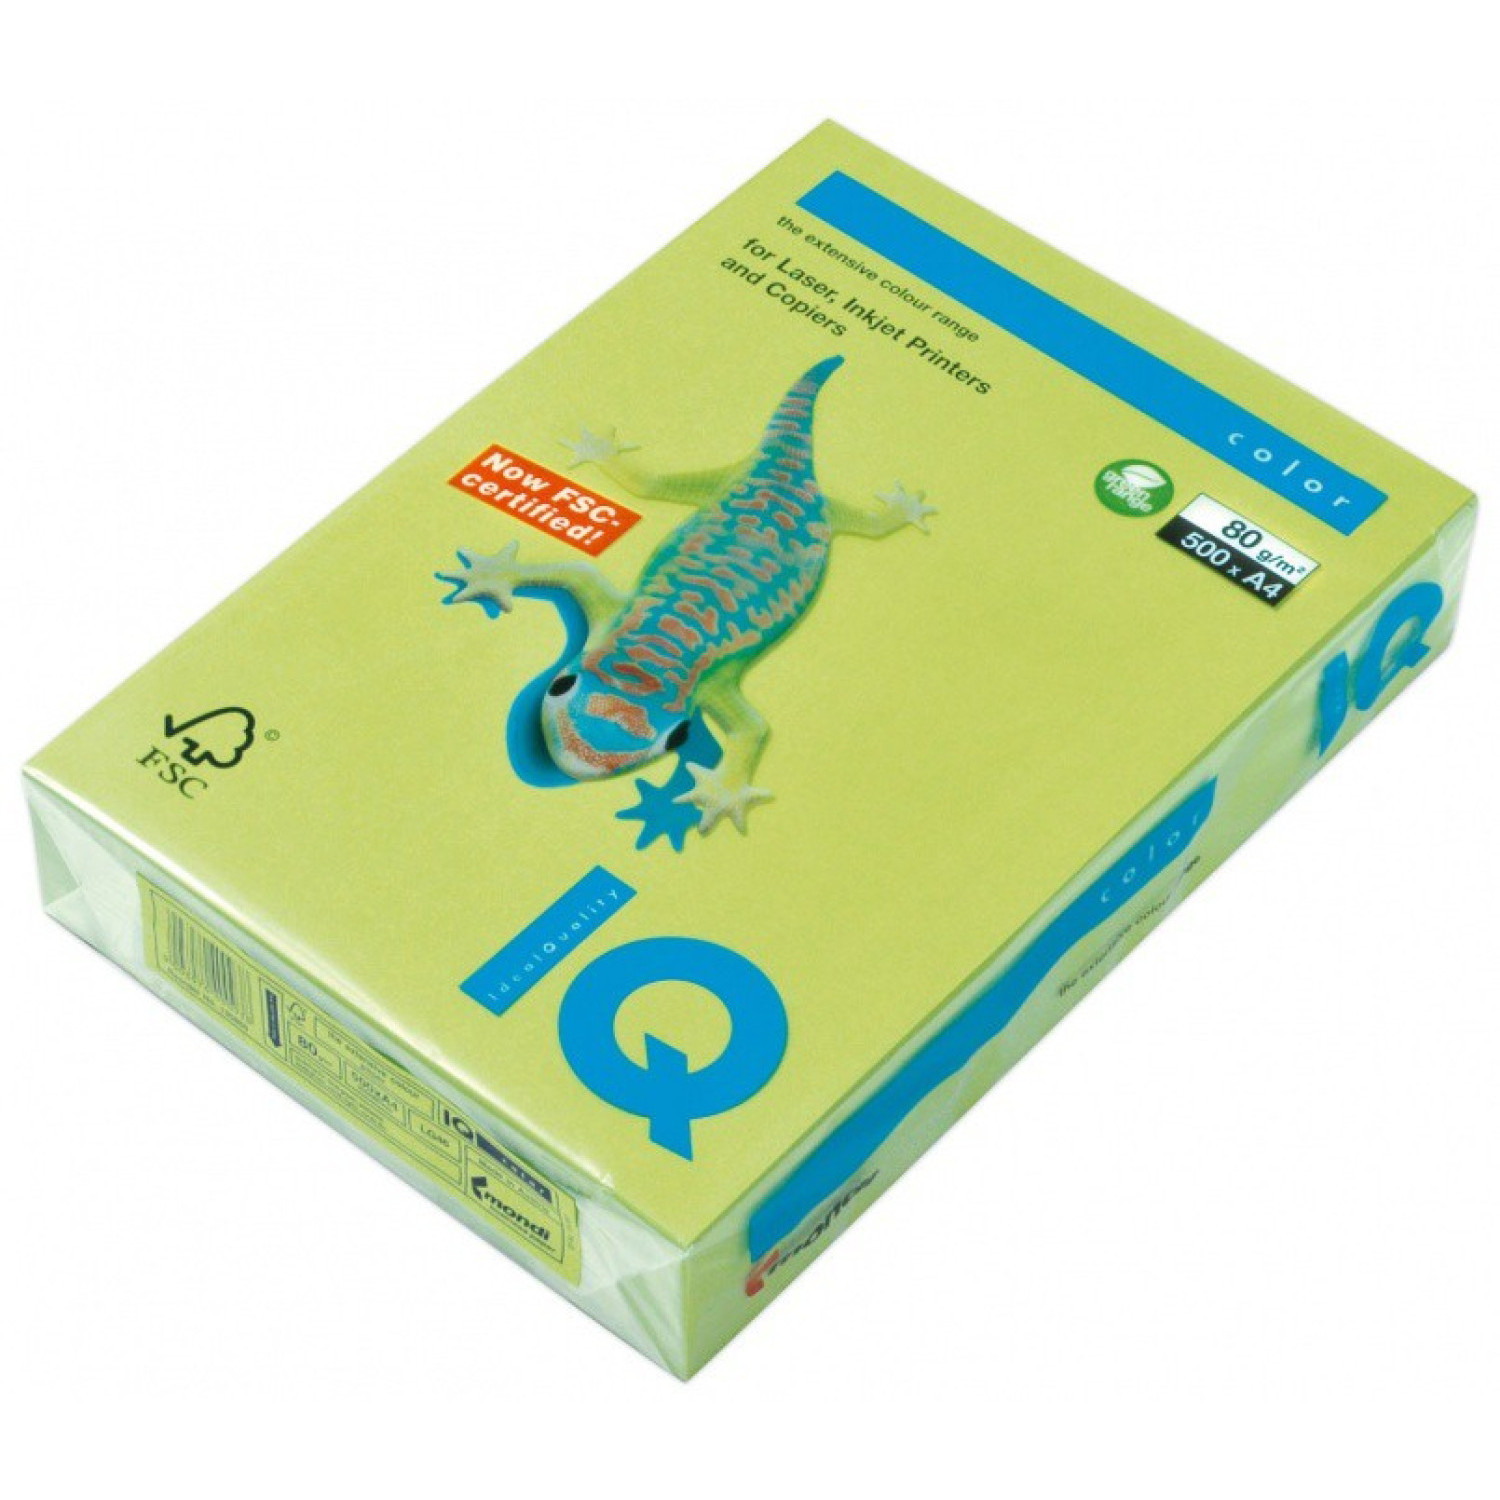 Копирна хартия IQ LG46, 80 гр., бледо зелен